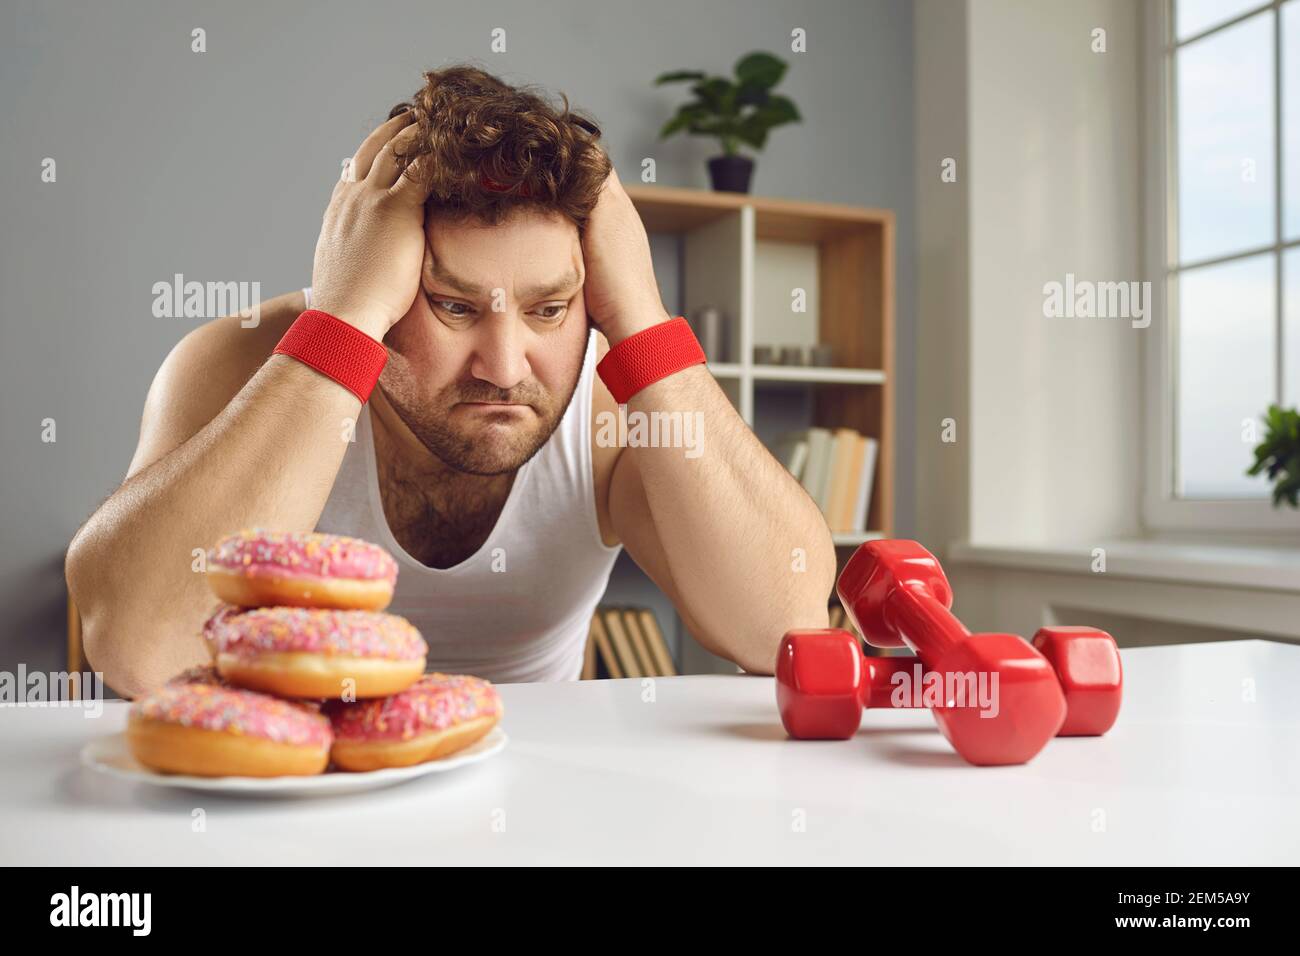 Uomo triste guardando i manubri e le ciambelle scegliendo tra sano e uno stile di vita malsano Foto Stock